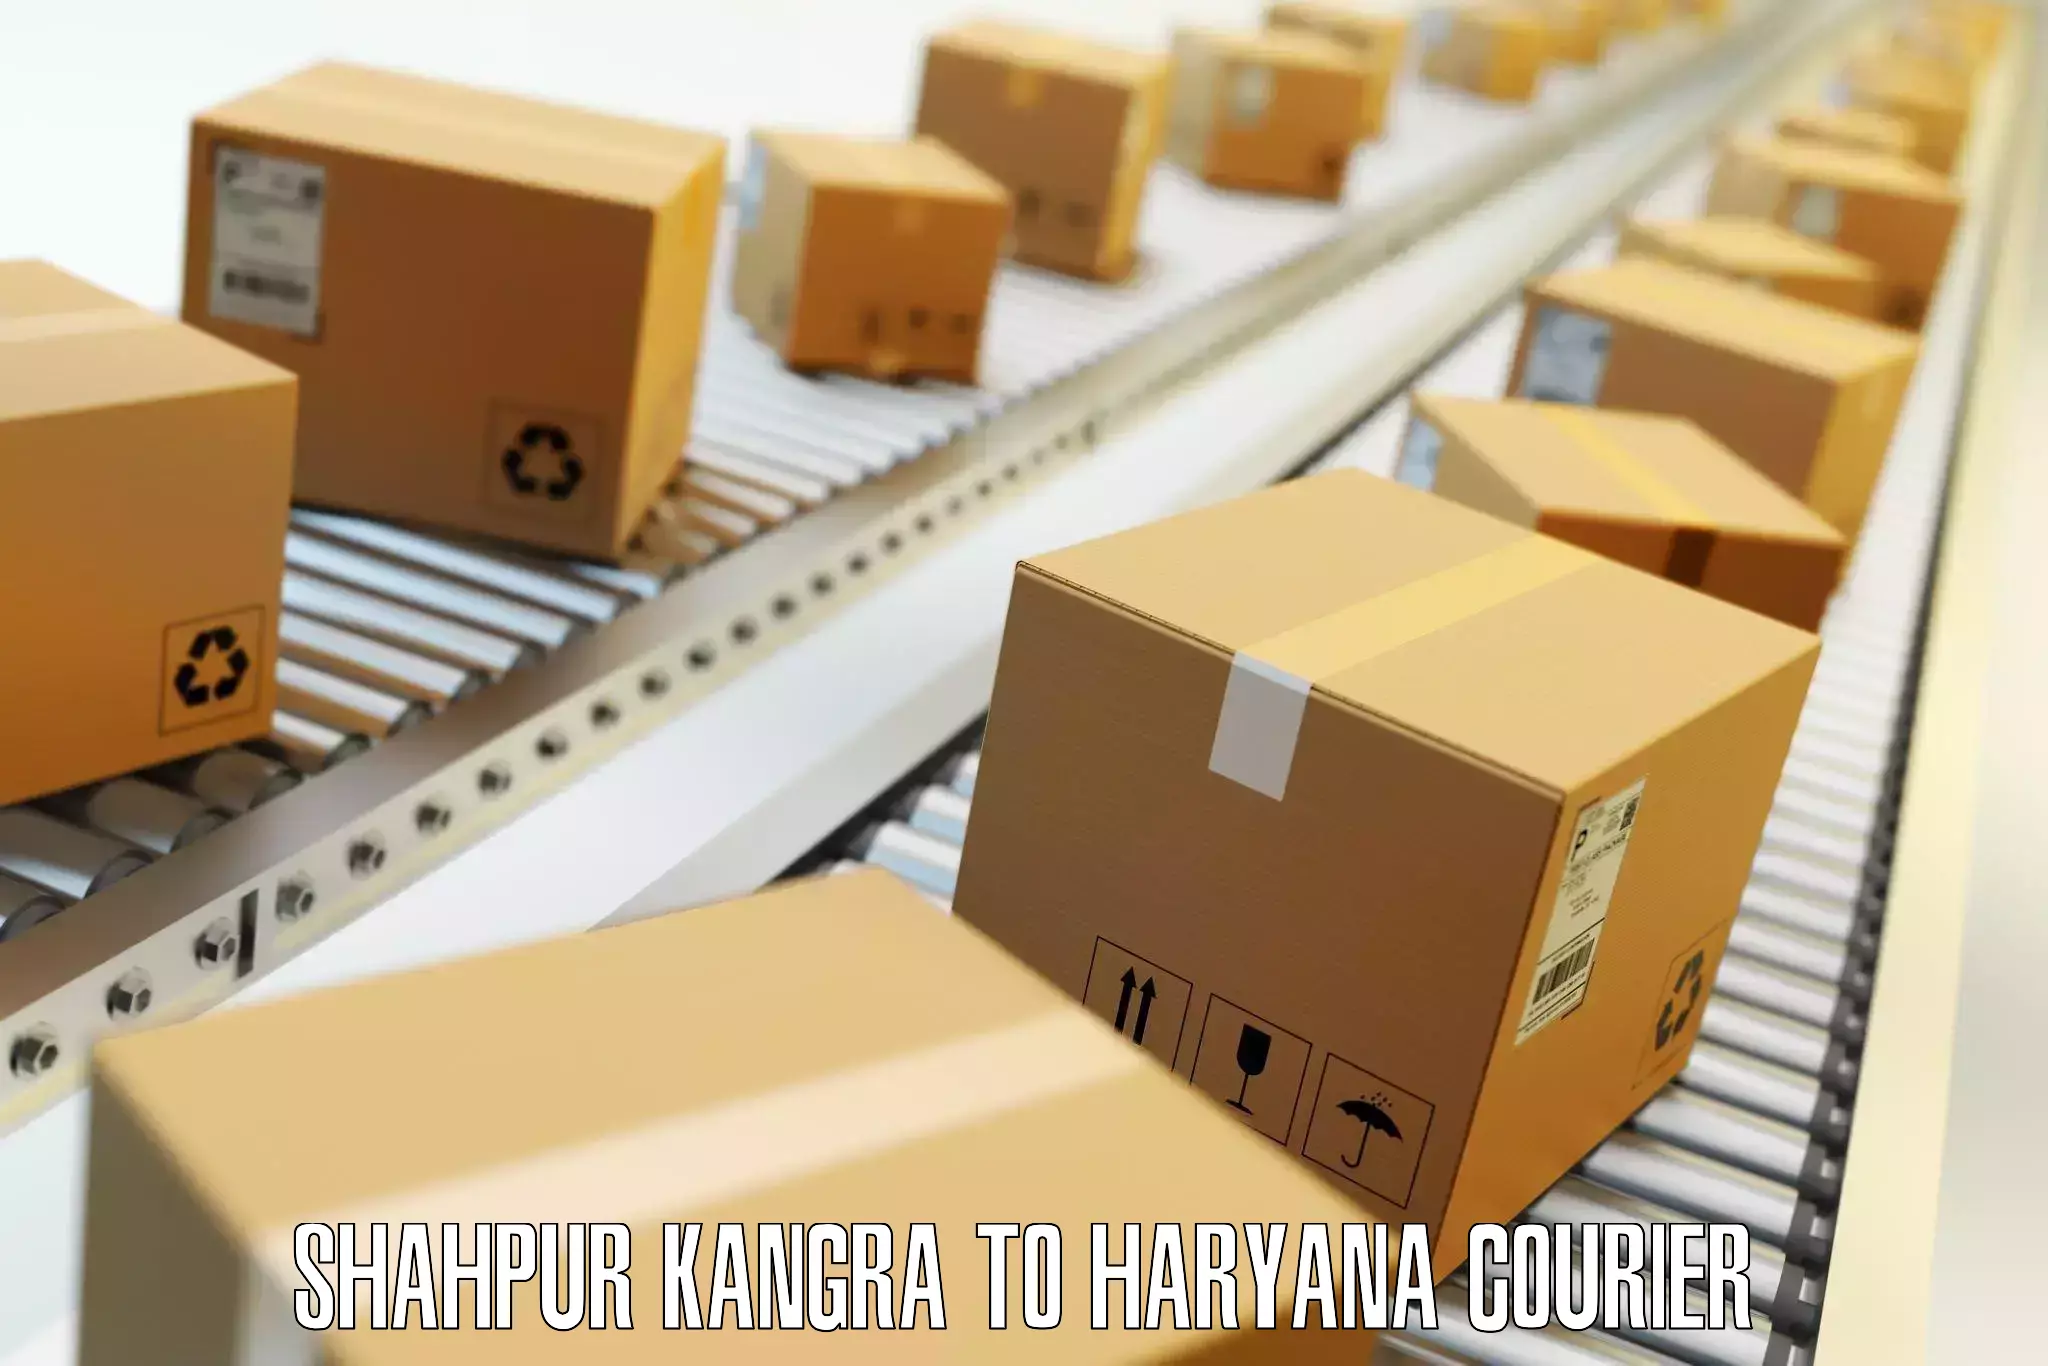 Baggage transport technology Shahpur Kangra to Chirya